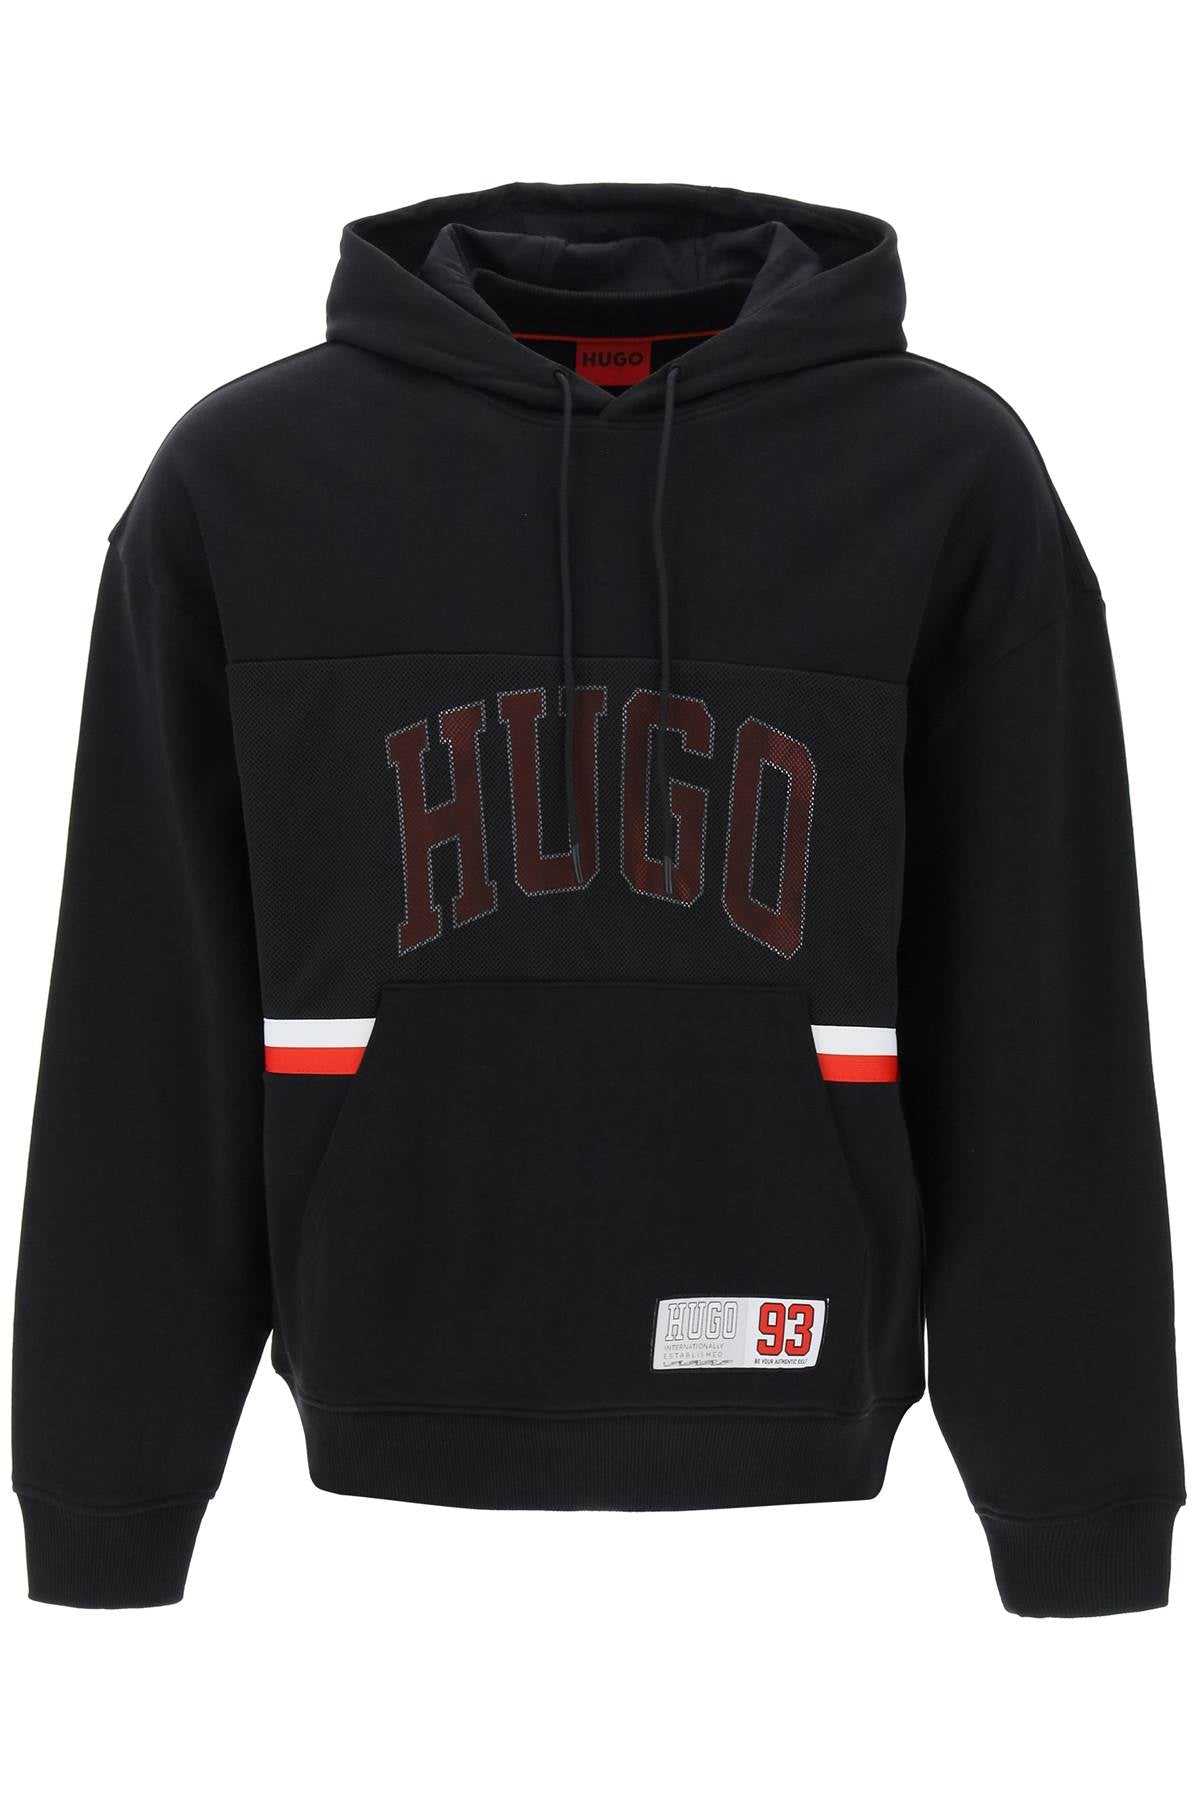 Hugo relaxed fit hoodie sweatshirt Black-sweatshirt-Hugo-S-Urbanheer